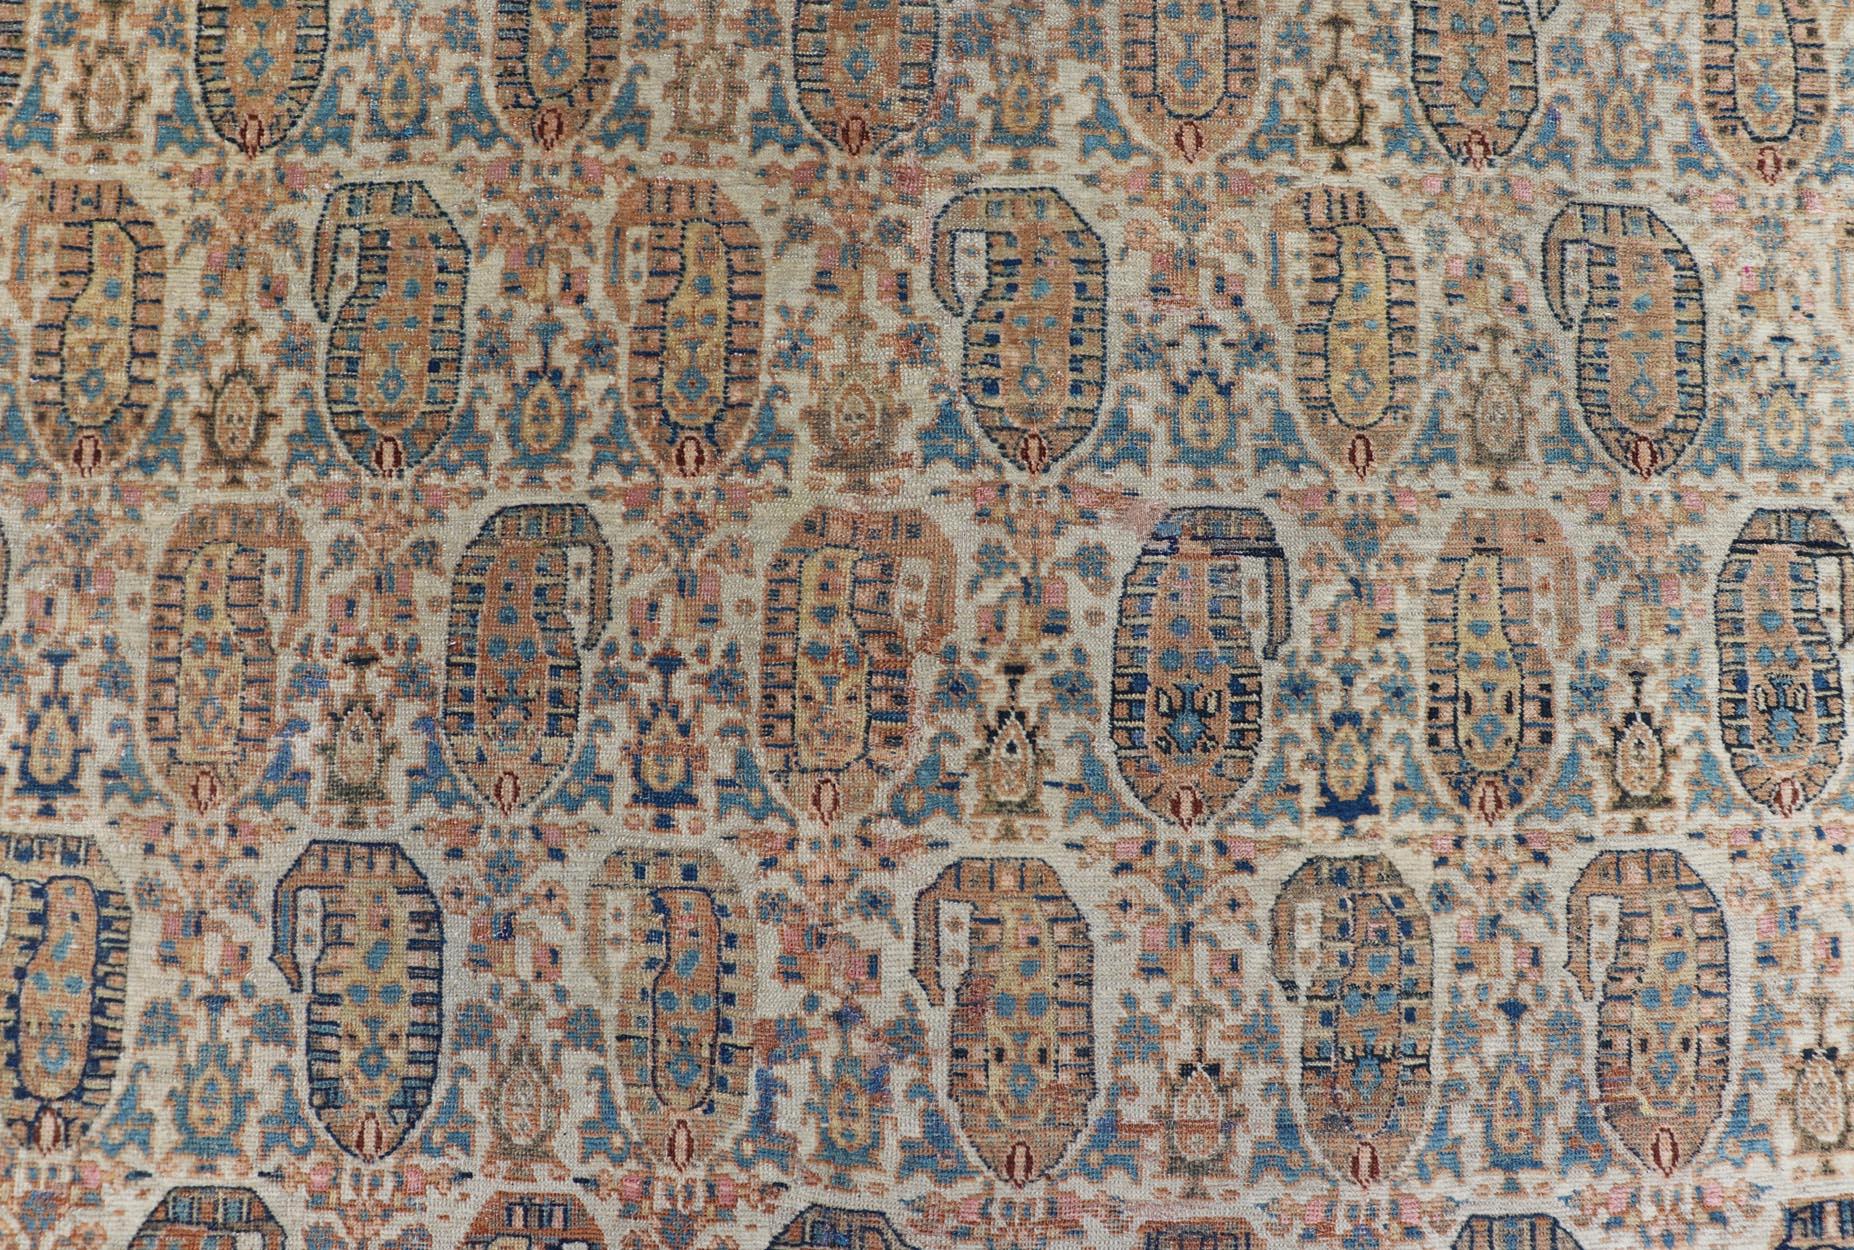 Antike Faraghan Perserteppich in Creme Farbe Hintergrund mit Paisley's mit blau. Keivan Woven Arts / Teppich / X23-0401-154, Faraghan  Antiker Faraghan, antiker Sarouk.
Maße: 8'6 x 13'3 
Diese exquisite antike Faraghan feinen persischen Teppich